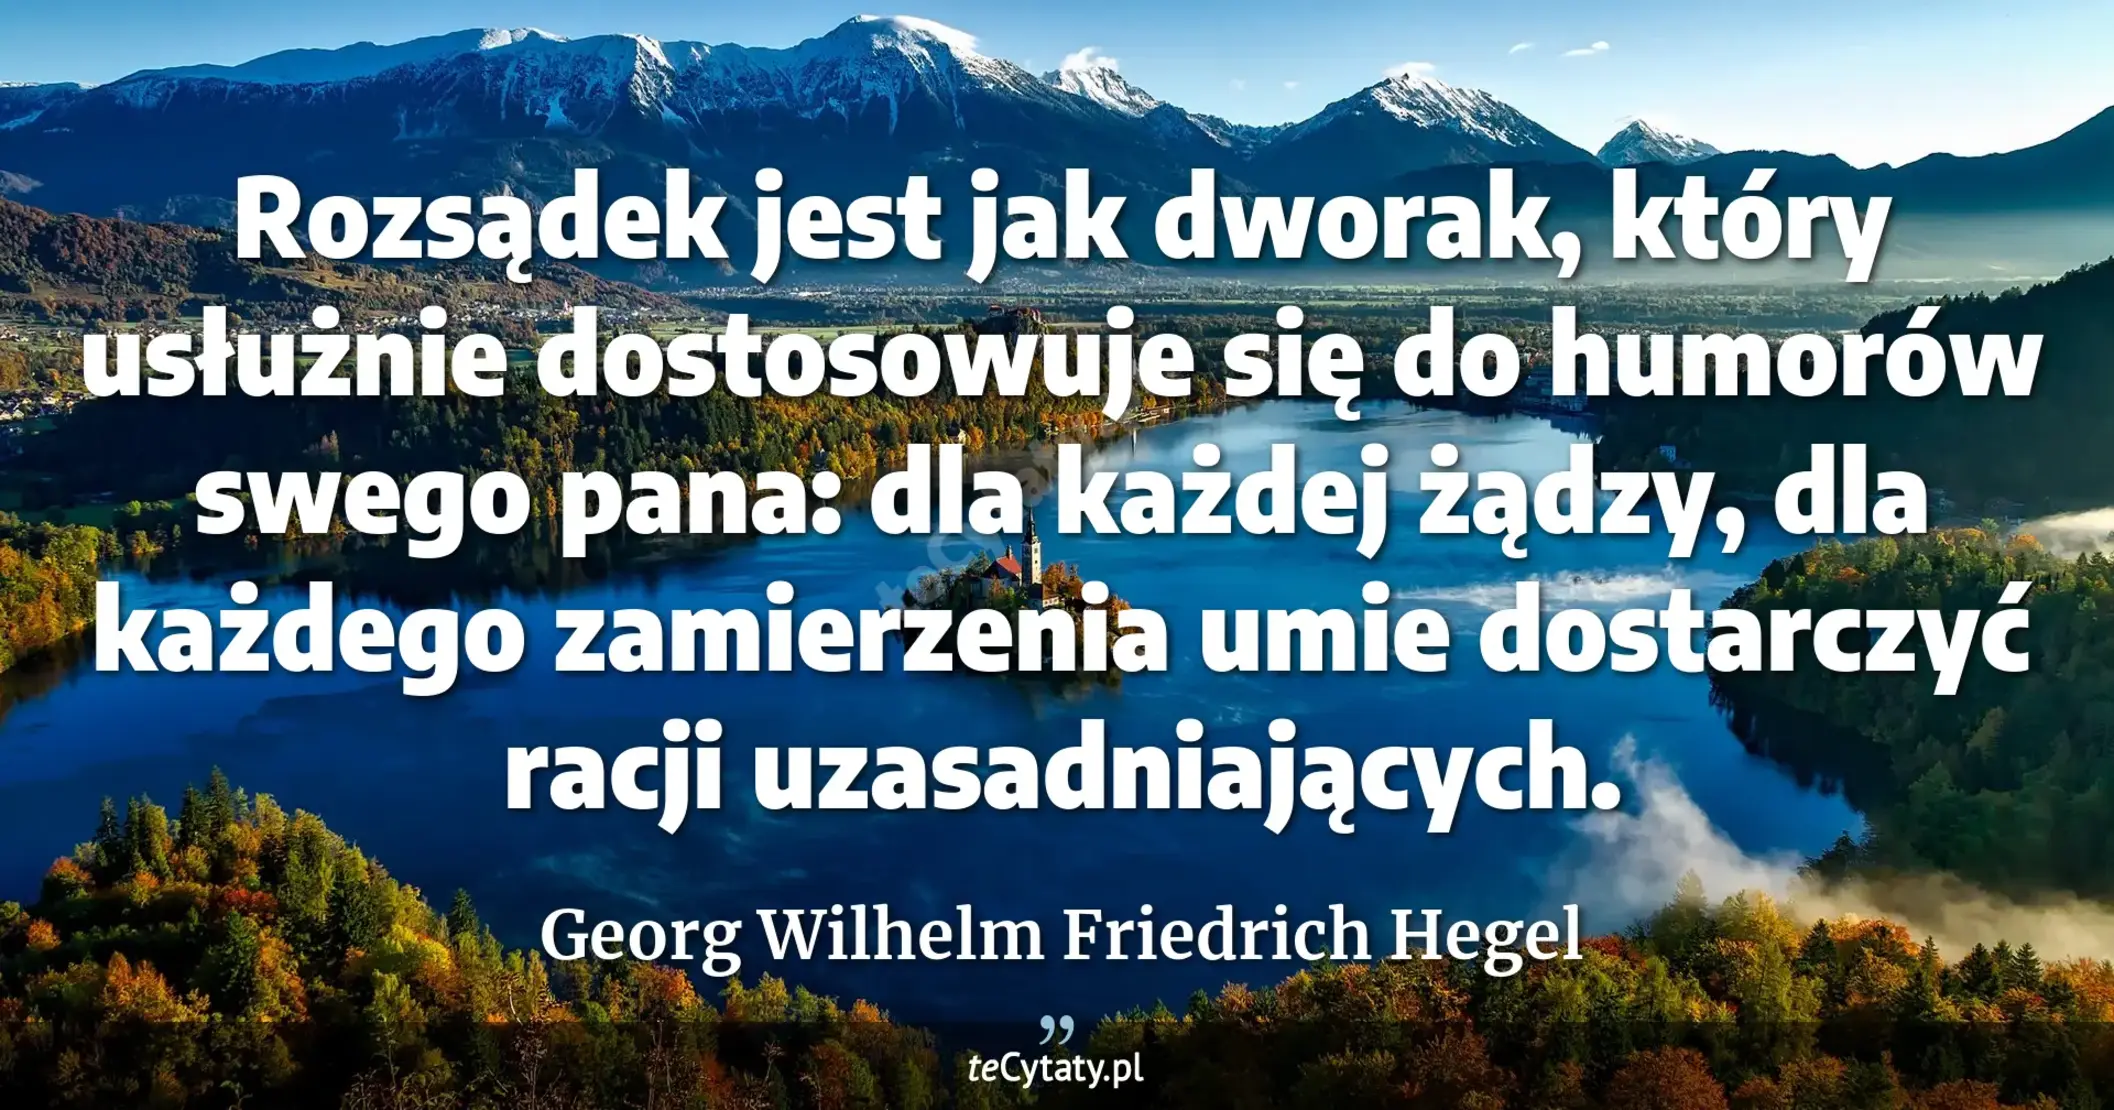 Rozsądek jest jak dworak, który usłużnie dostosowuje się do humorów swego pana: dla każdej żądzy, dla każdego zamierzenia umie dostarczyć racji uzasadniających. - Georg Wilhelm Friedrich Hegel